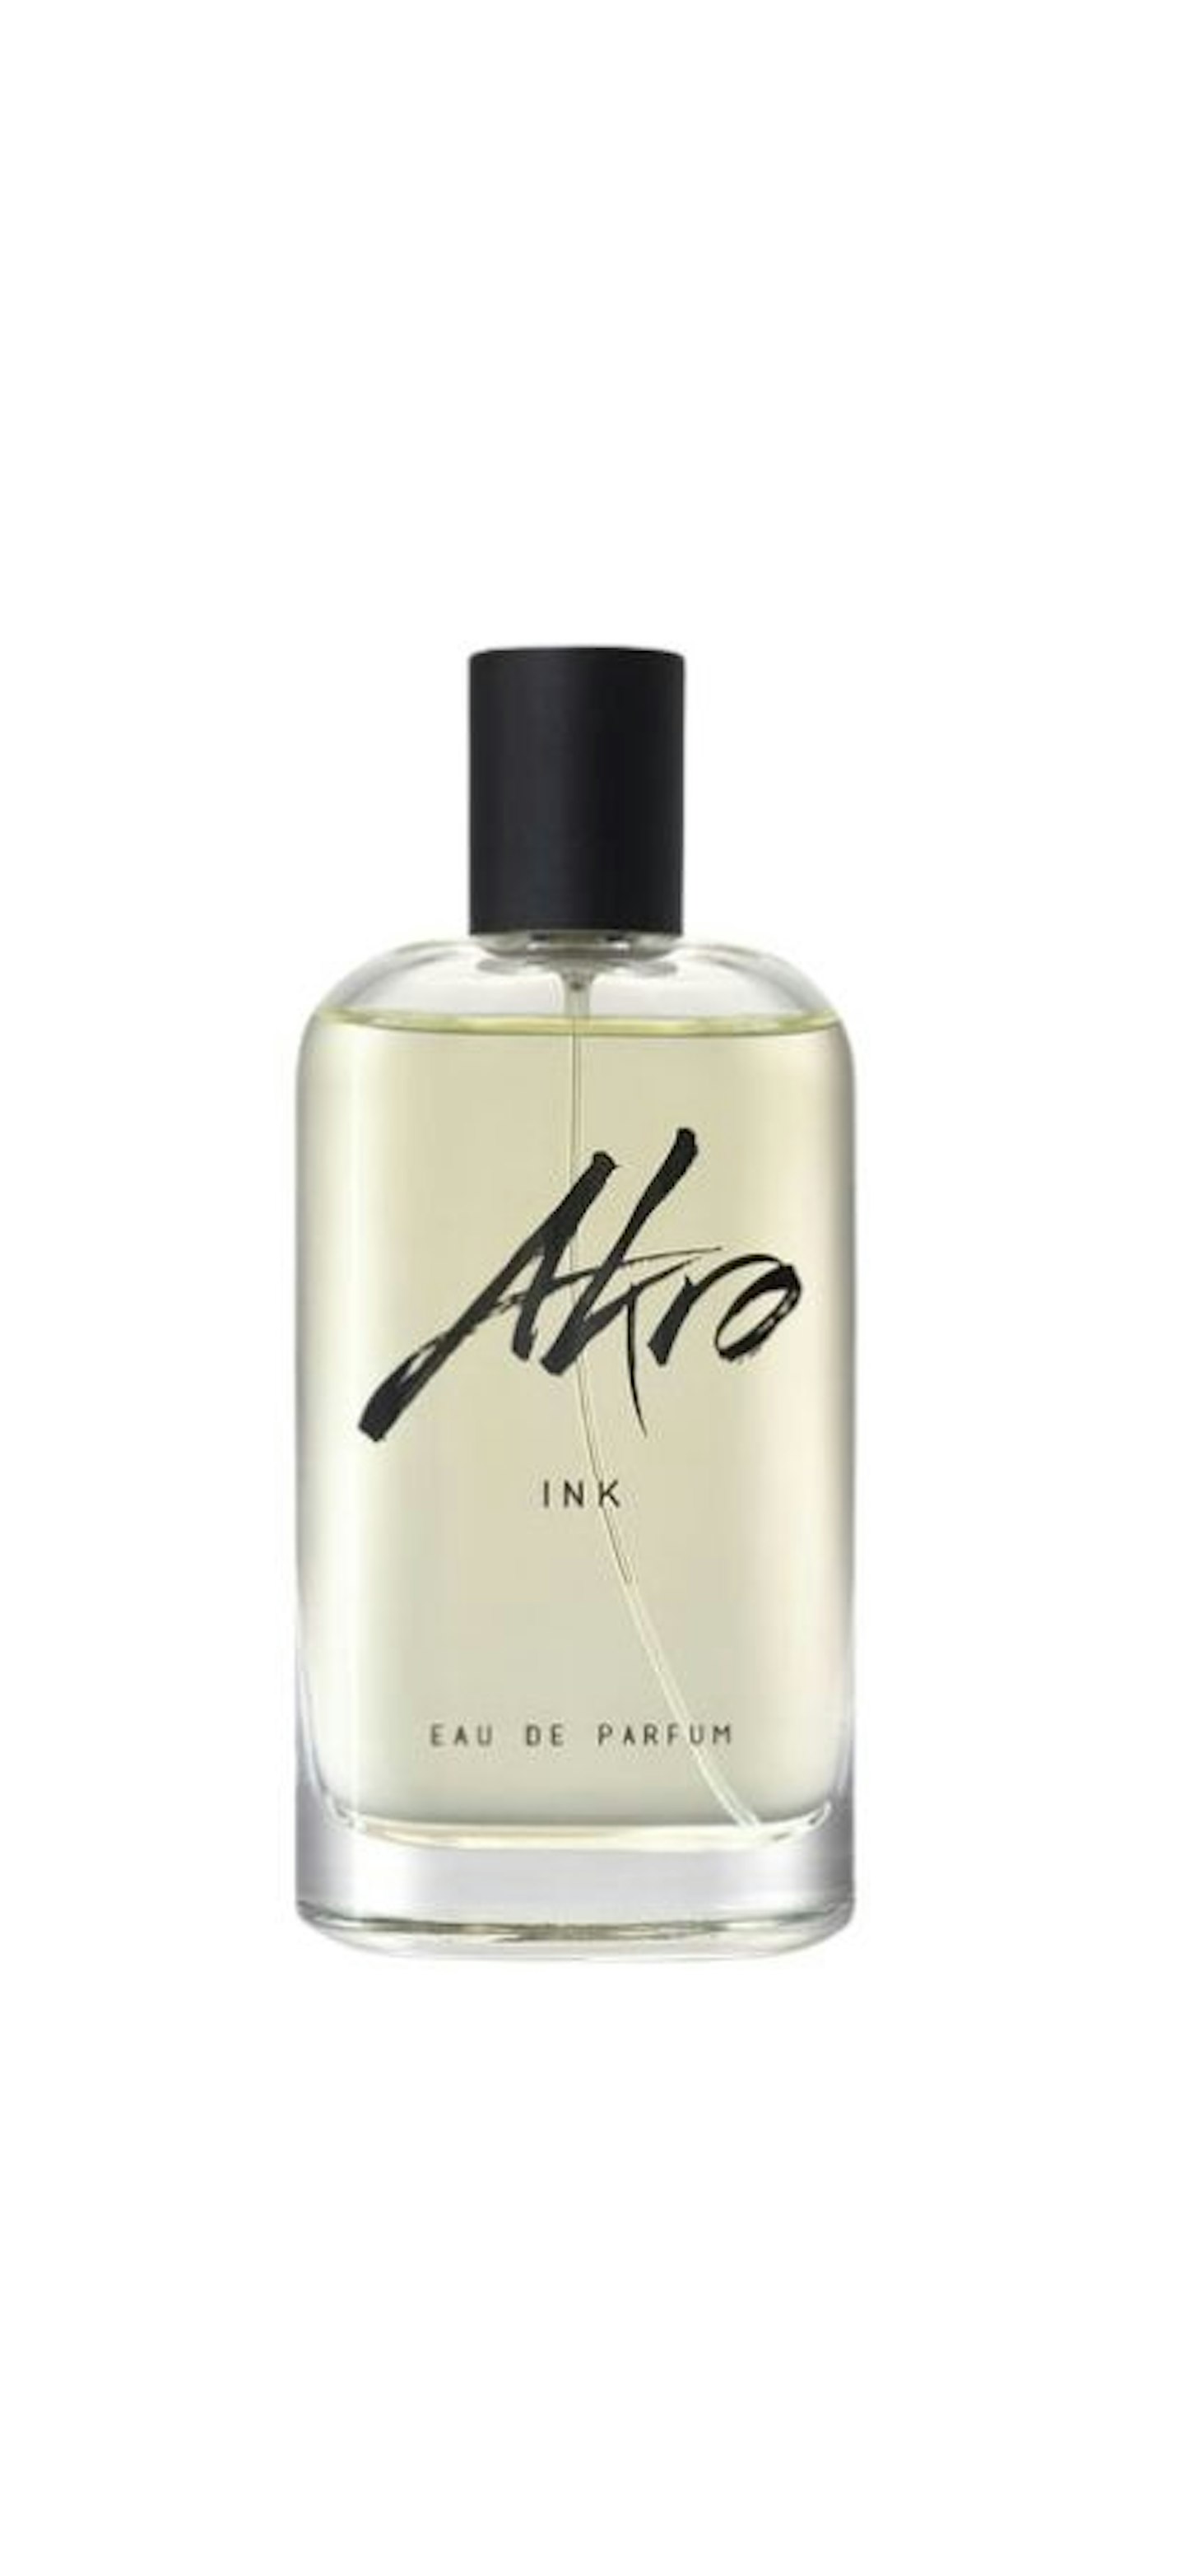 Akro - Ink £140